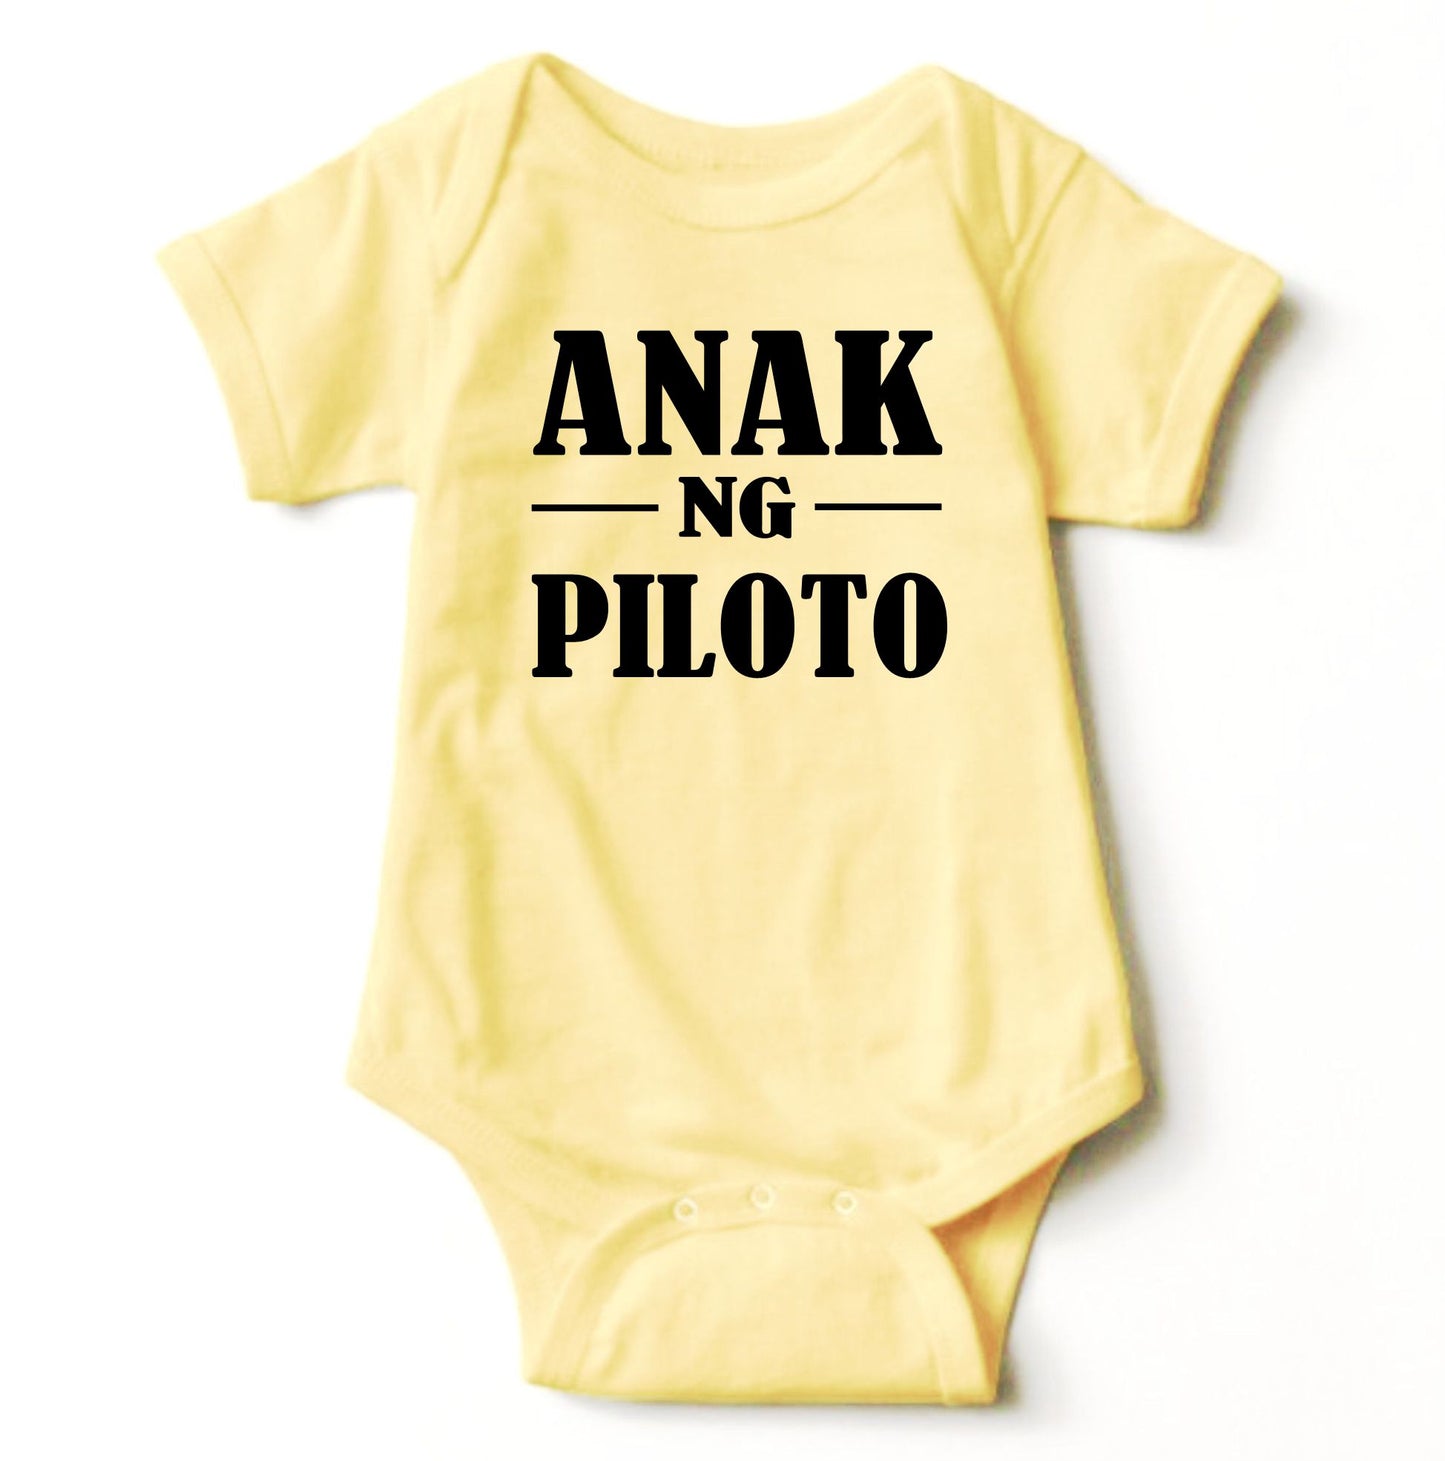 Baby Statement Onesies - Anak ng Piloto